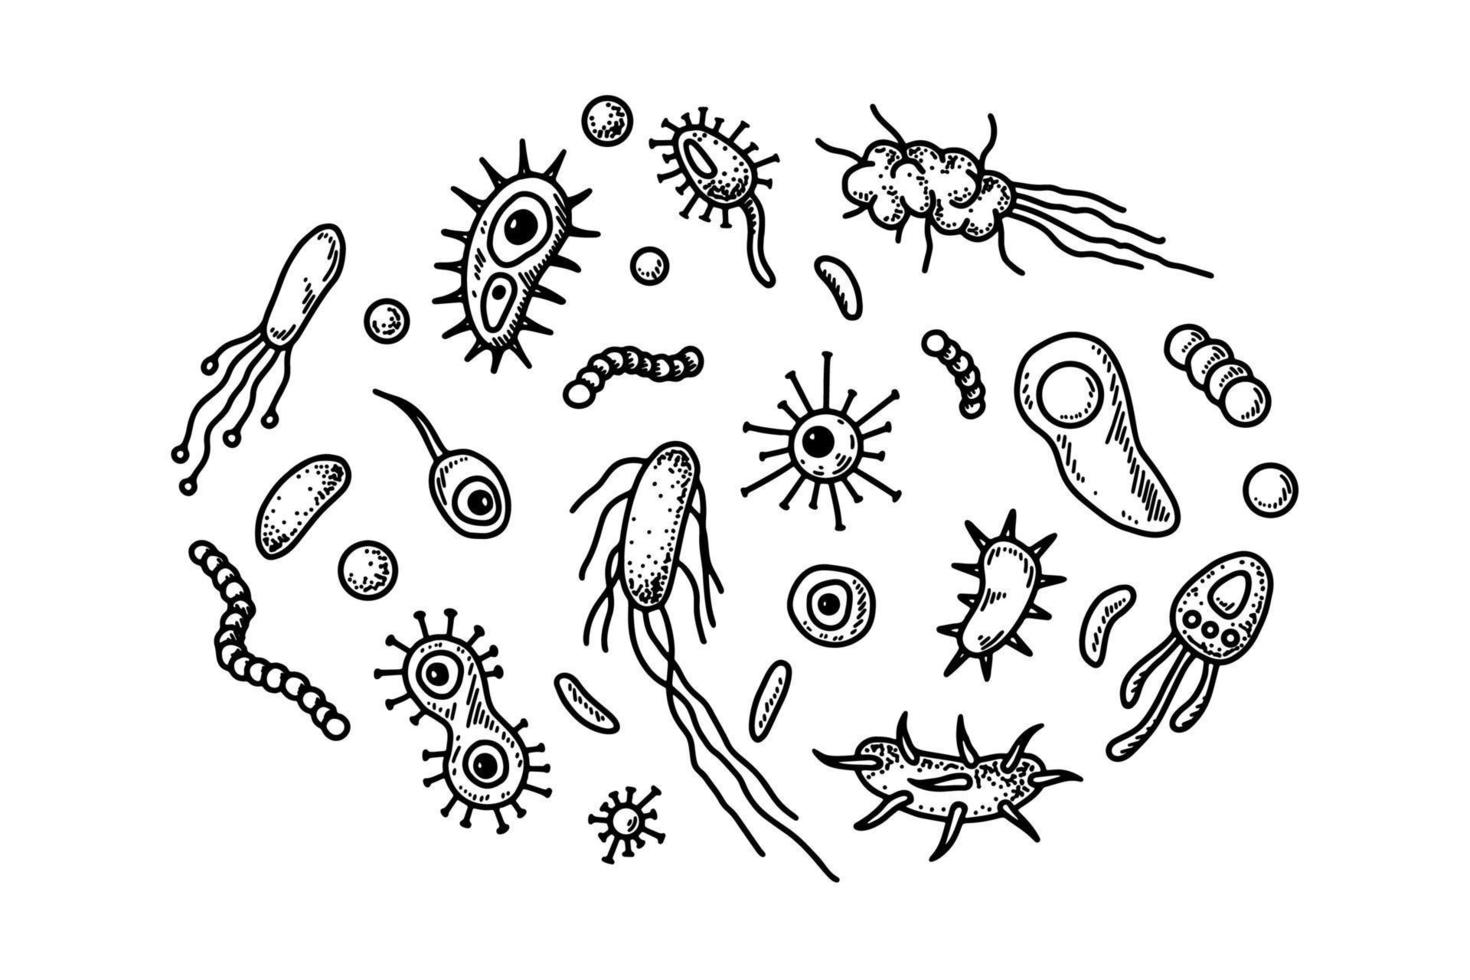 conjunto de bacterias y microorganismos dibujados a mano. ilustración vectorial en estilo boceto. diseño científico de microbiología realista vector